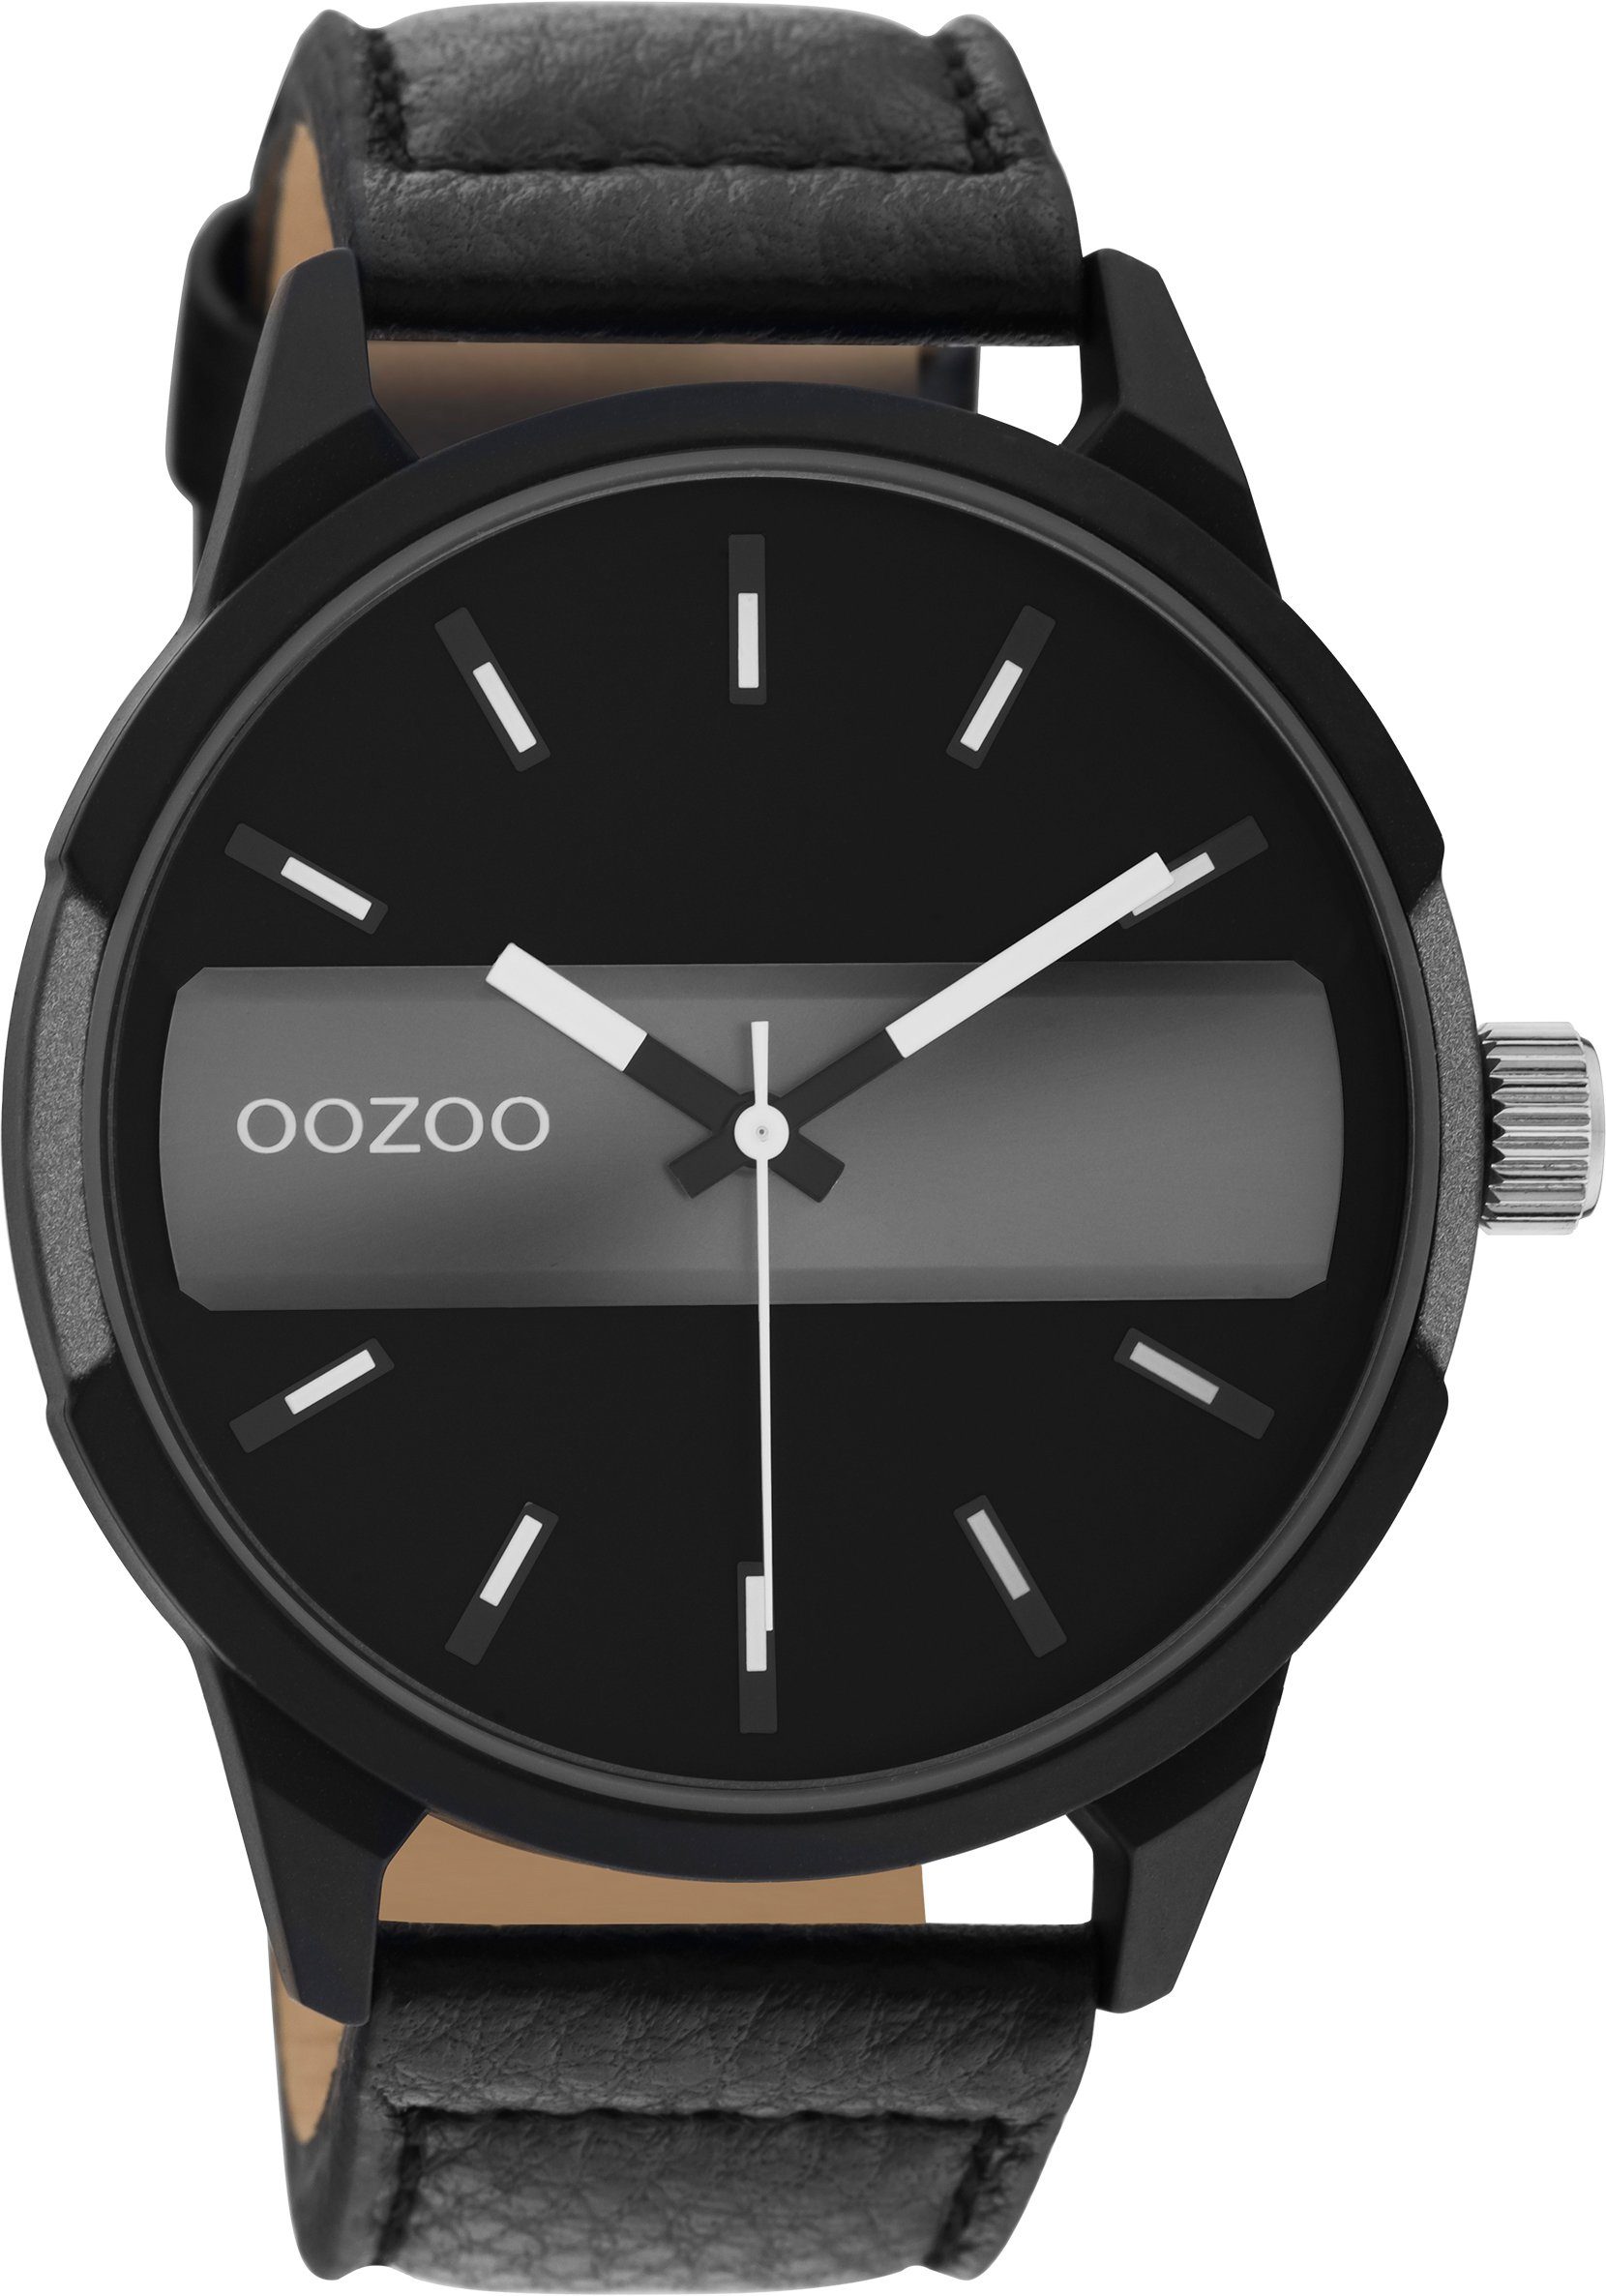 OOZOO Quarzuhr C11000, Metallgehäuse, schwarz-grau IP-beschichtet, Ø ca. 48  mm